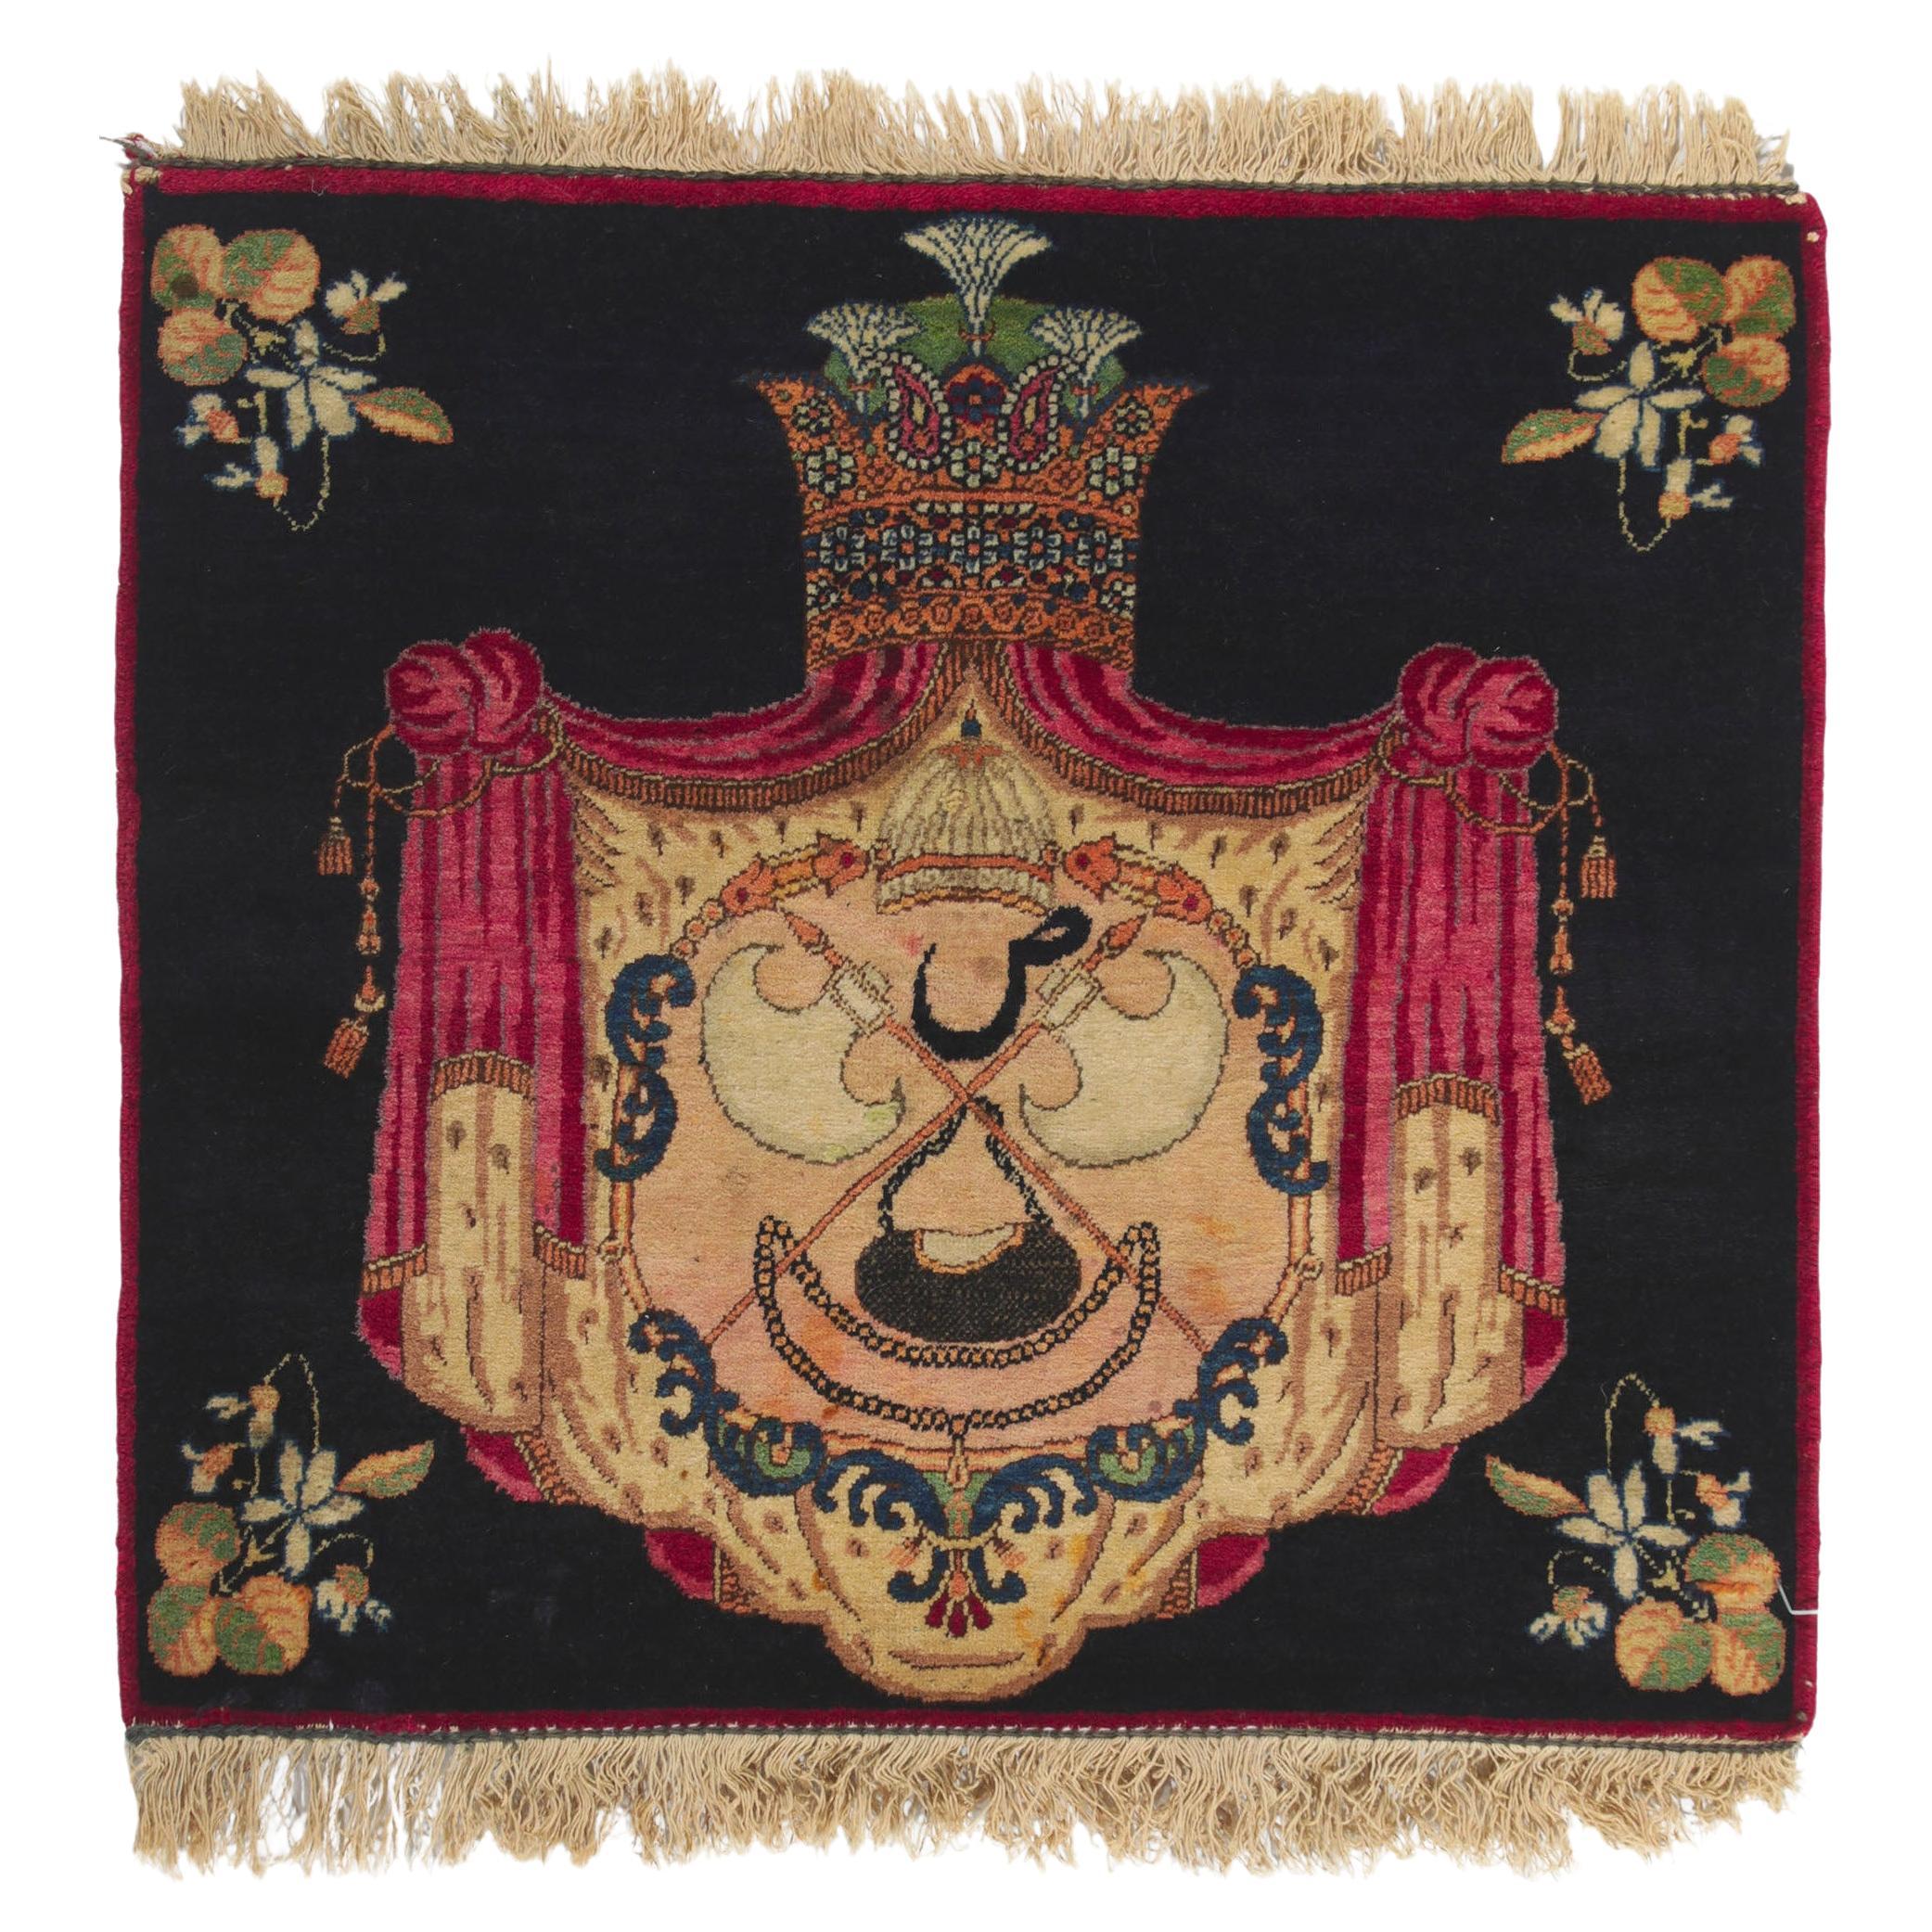 Antique Persian Kerman Carpet For Sale